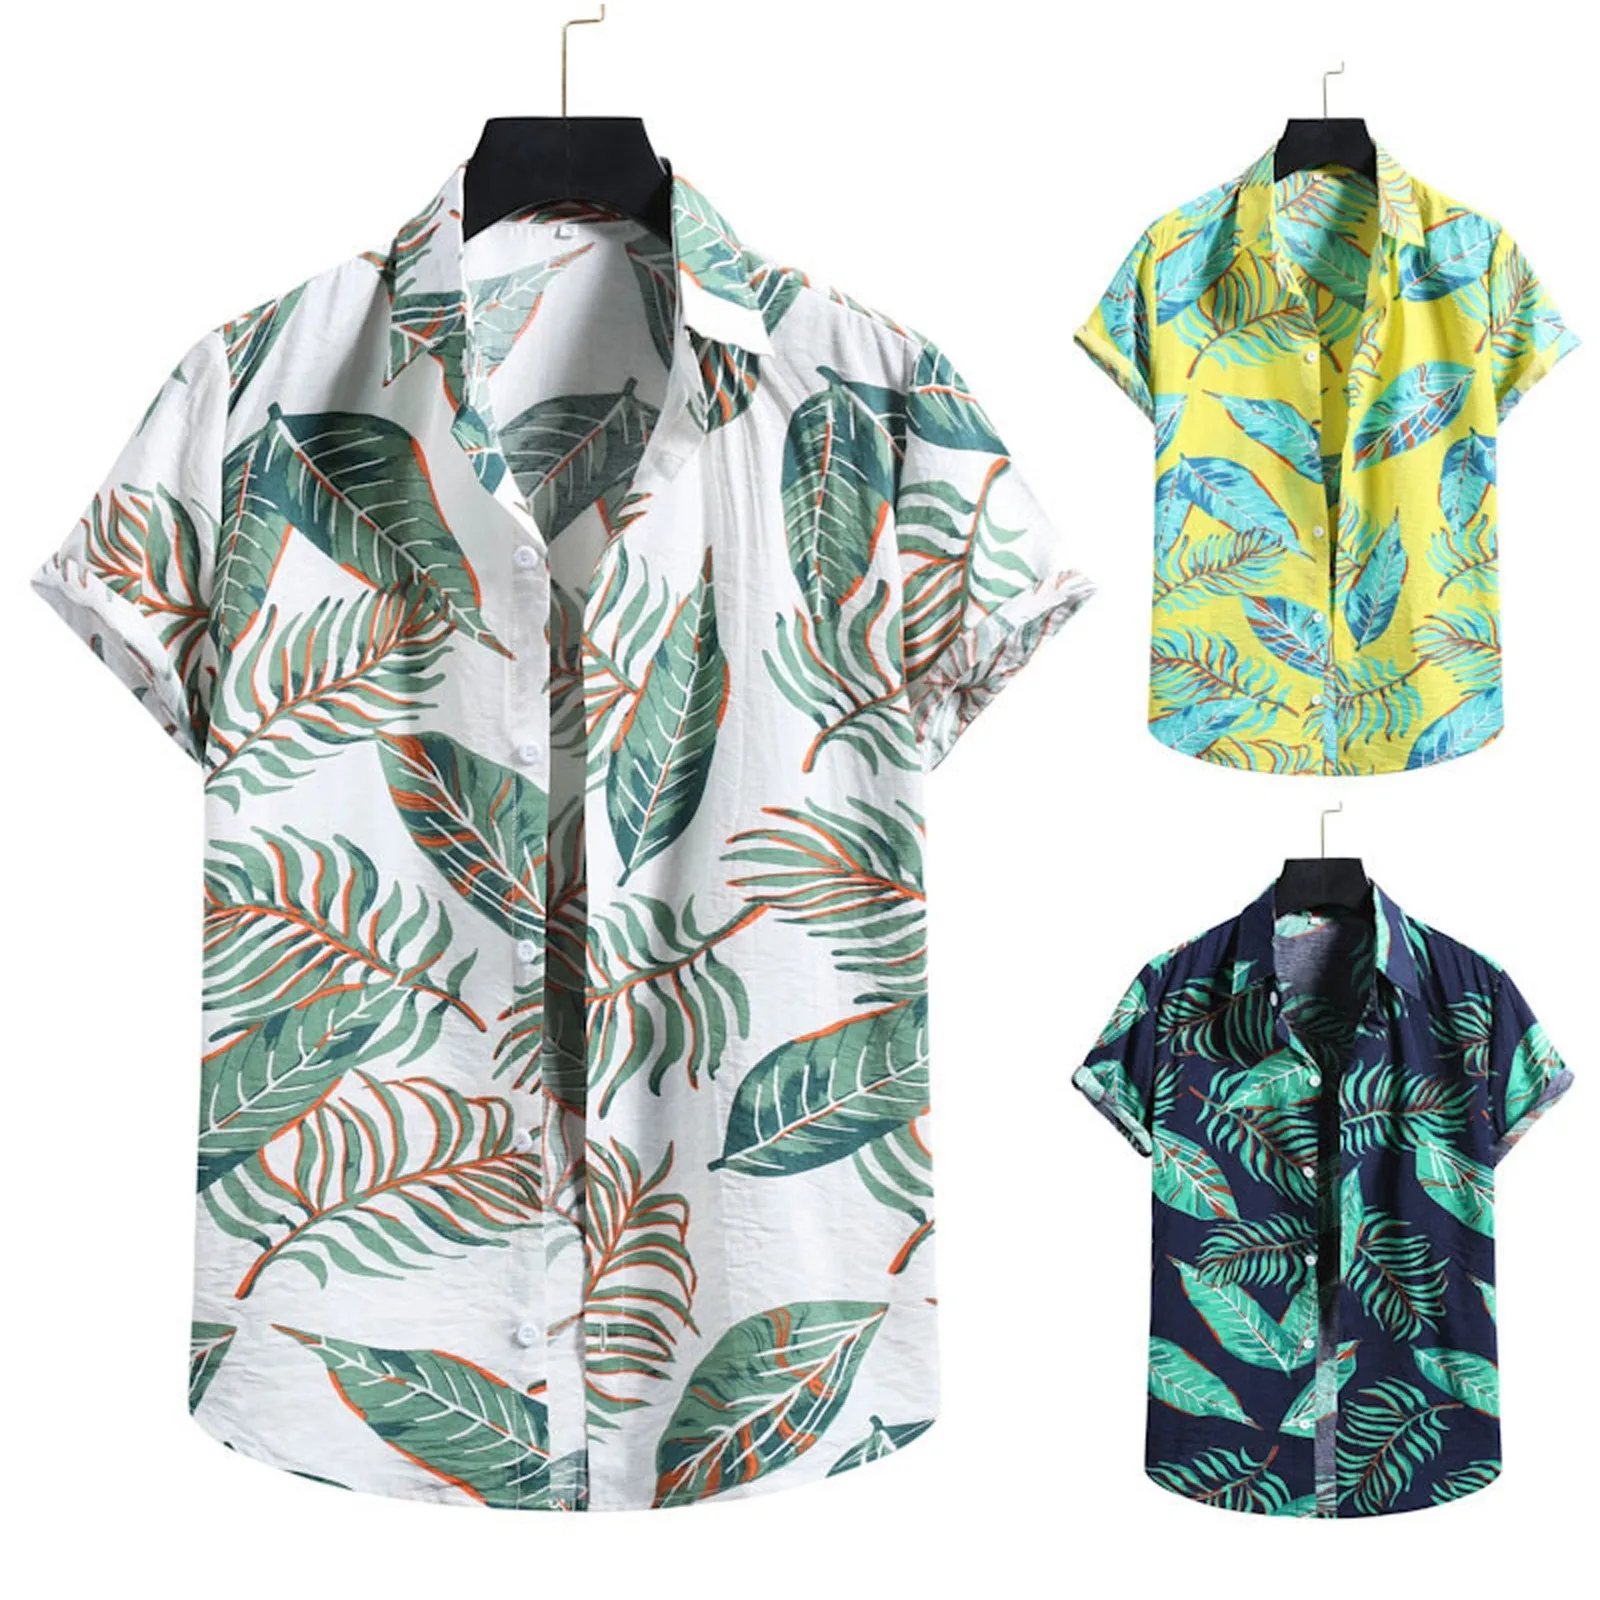 

Летняя мужская модная рубашка с принтом листьев, короткими рукавами, отворотами и пуговицами, повседневная Гавайская пляжная блузка, свободные топы, хип-хоп рубашки # g3